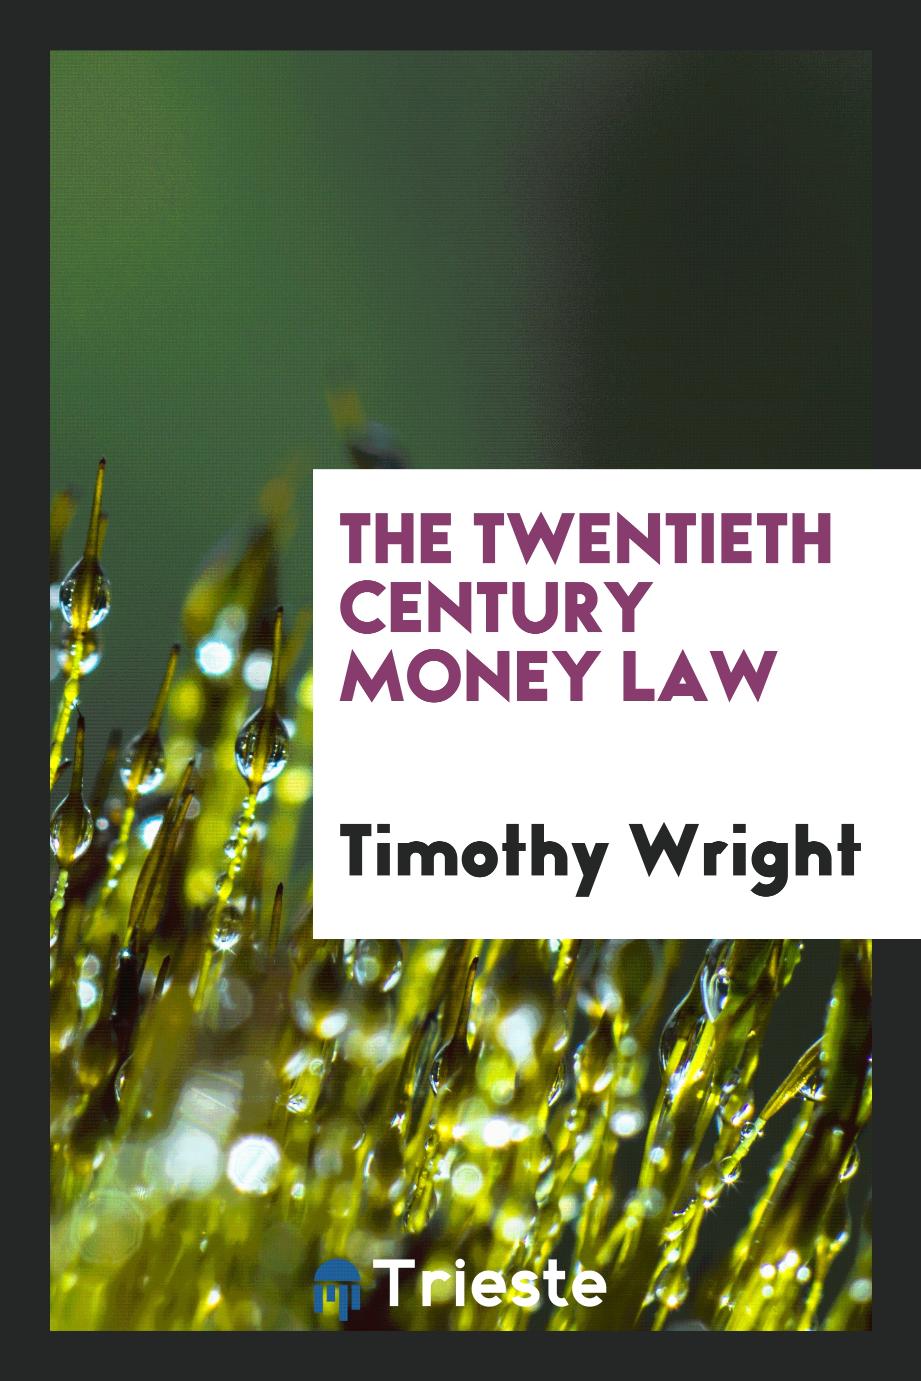 The twentieth century money law